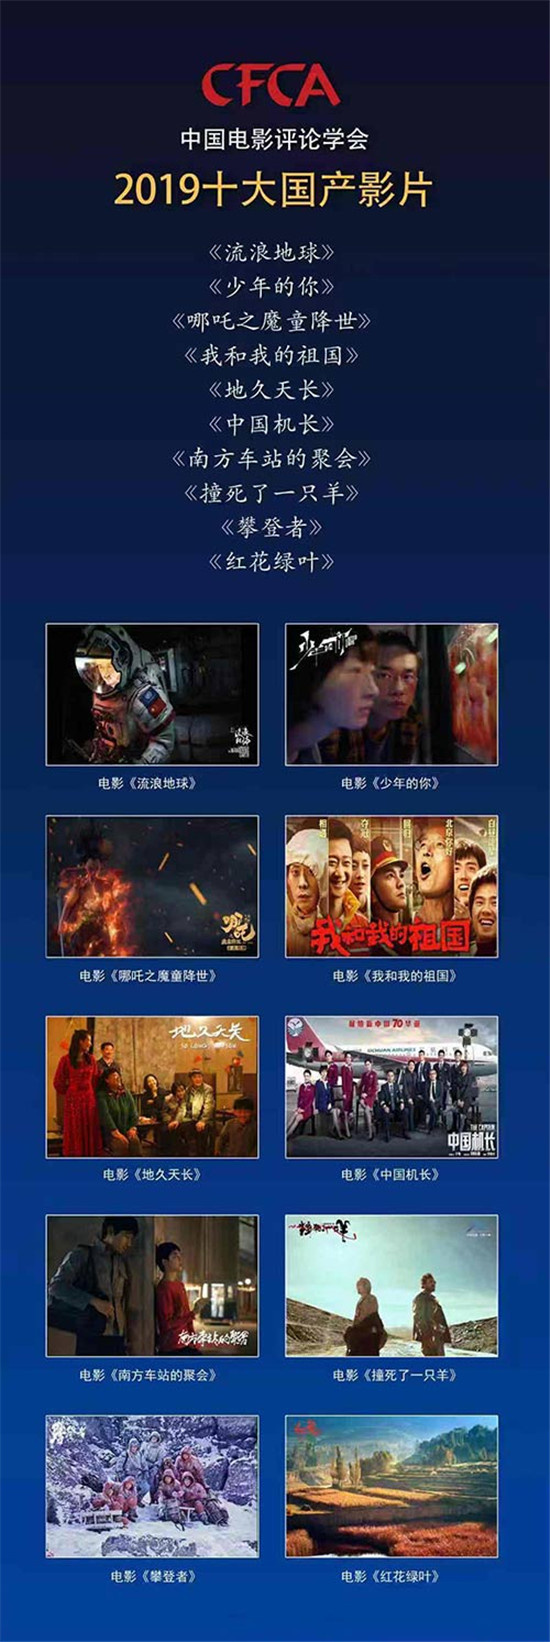 电影评论学会2019十大国产影片 《流浪地球》居首(图2)